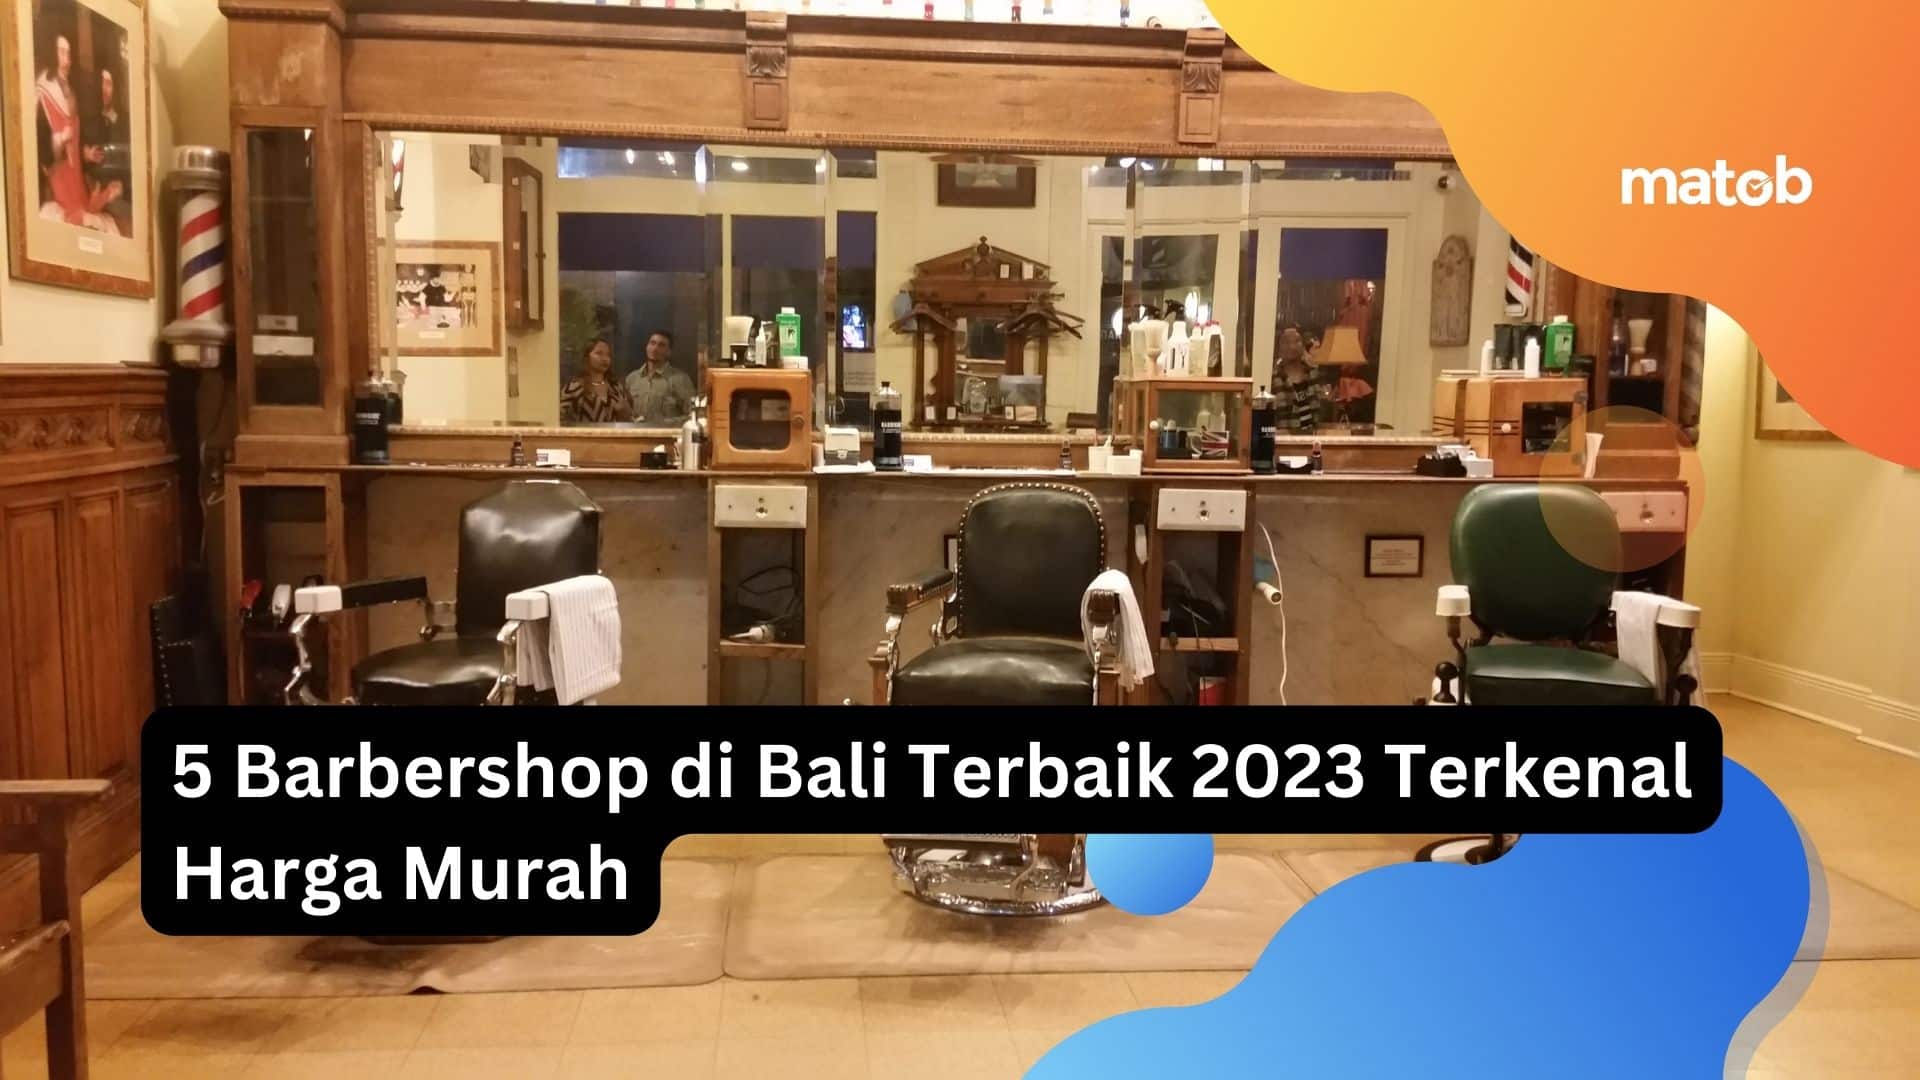 5 Barbershop di Bali Terbaik 2023 Terkenal